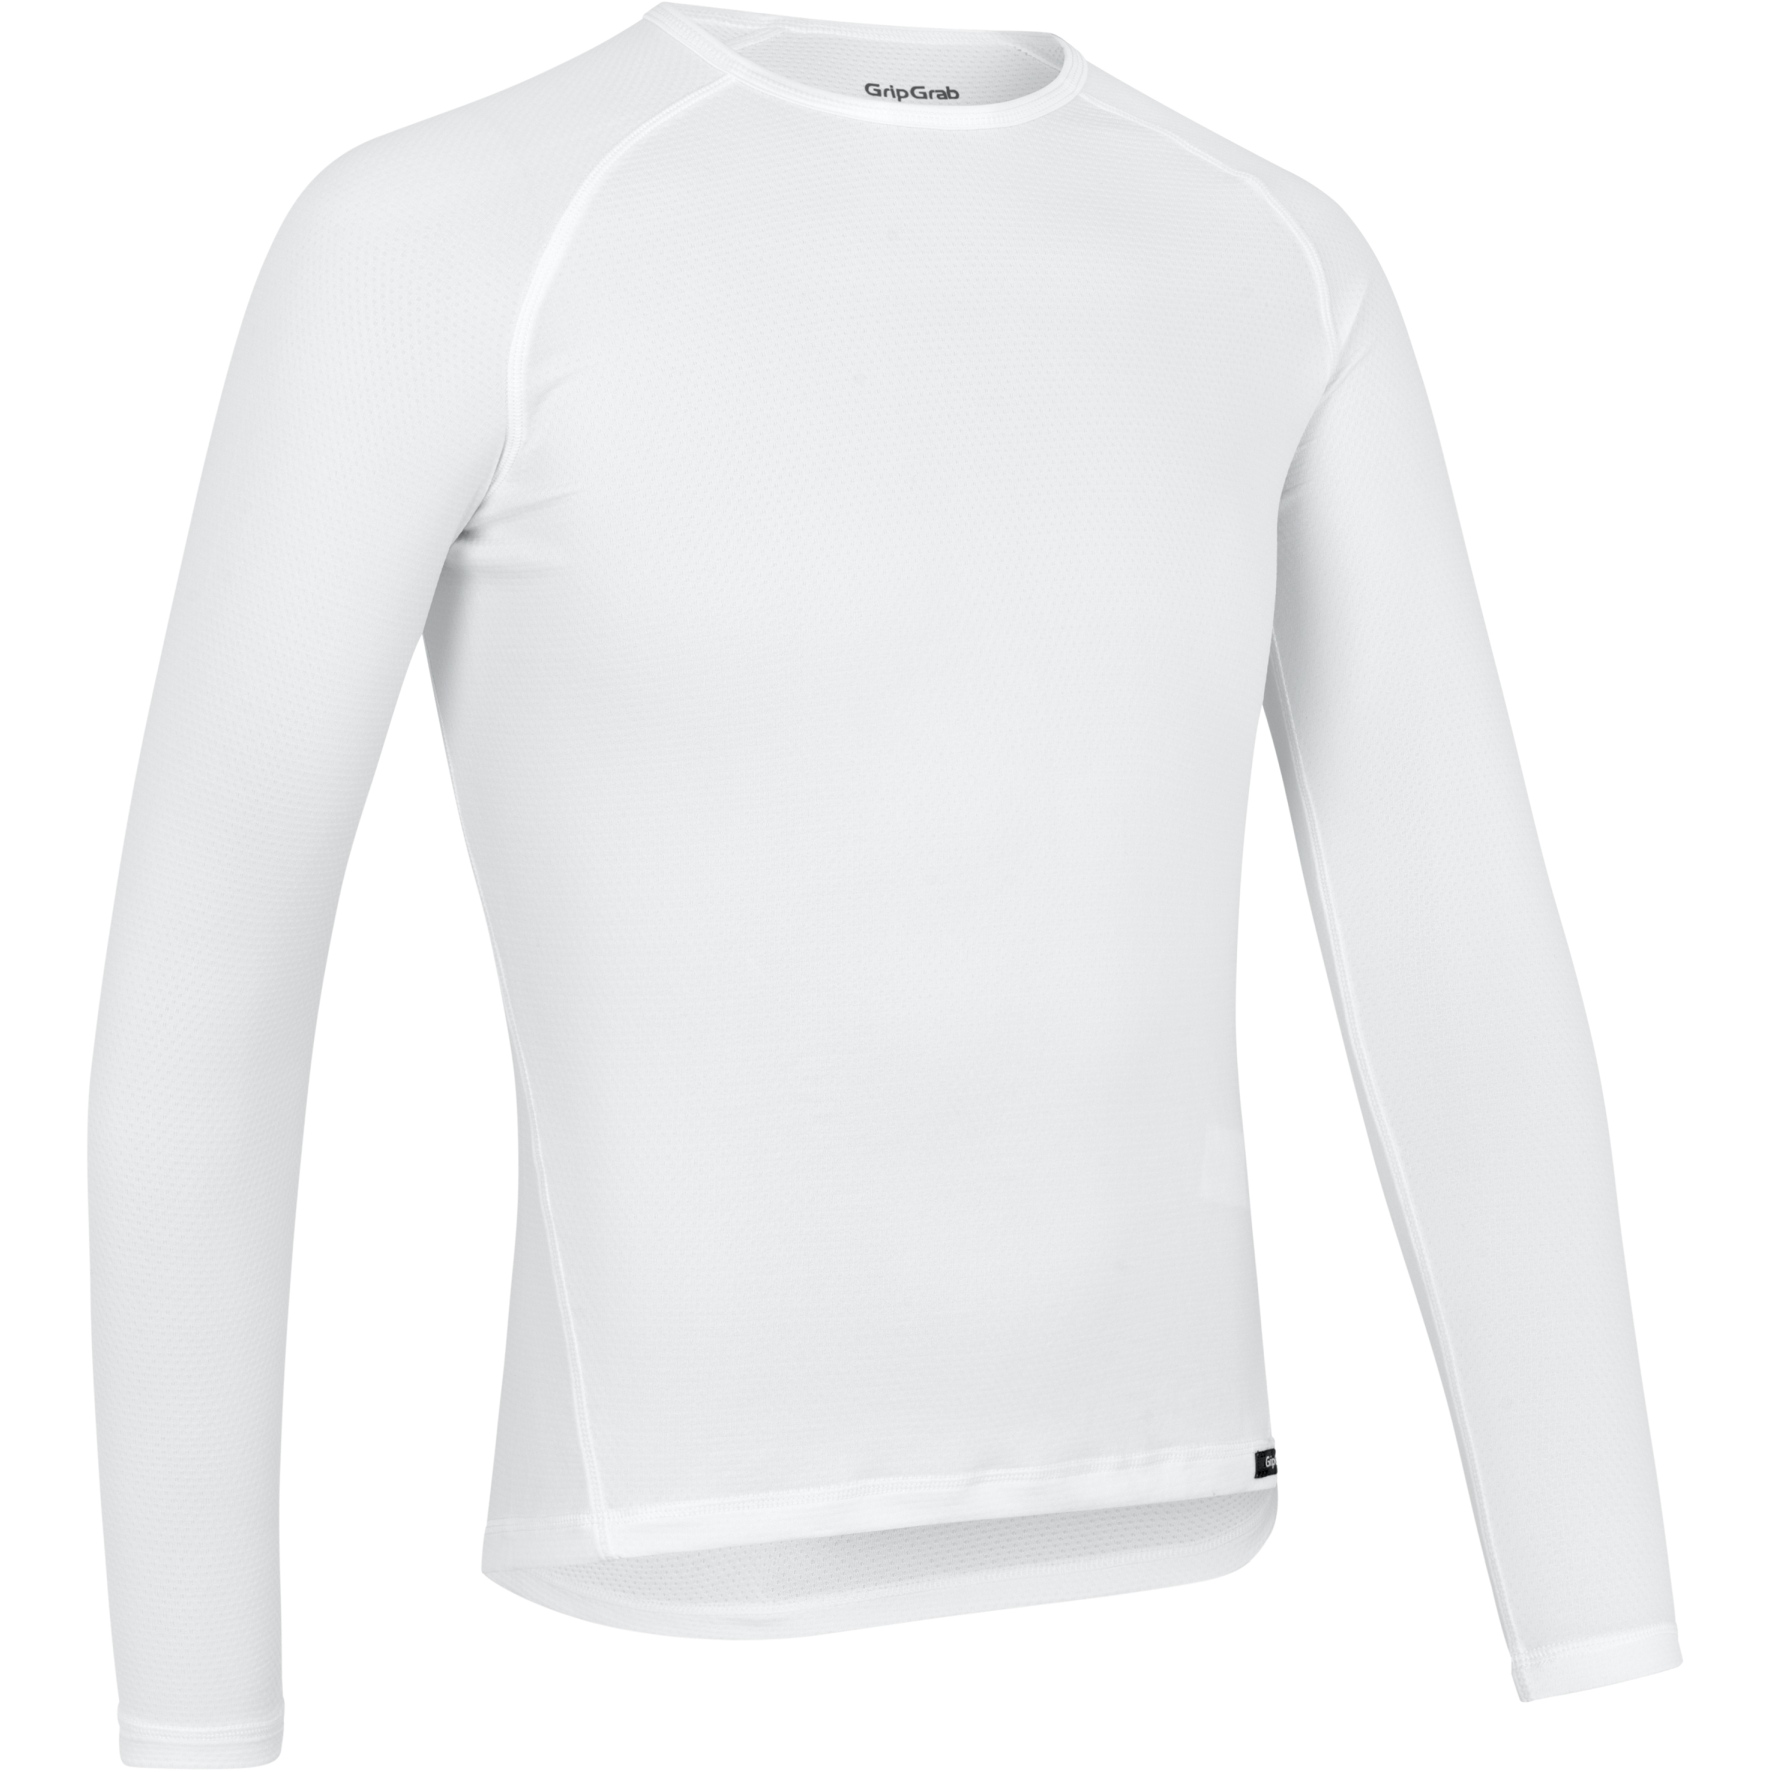 Produktbild von GripGrab Ride Thermal Langärmeliges Unterhemd - White